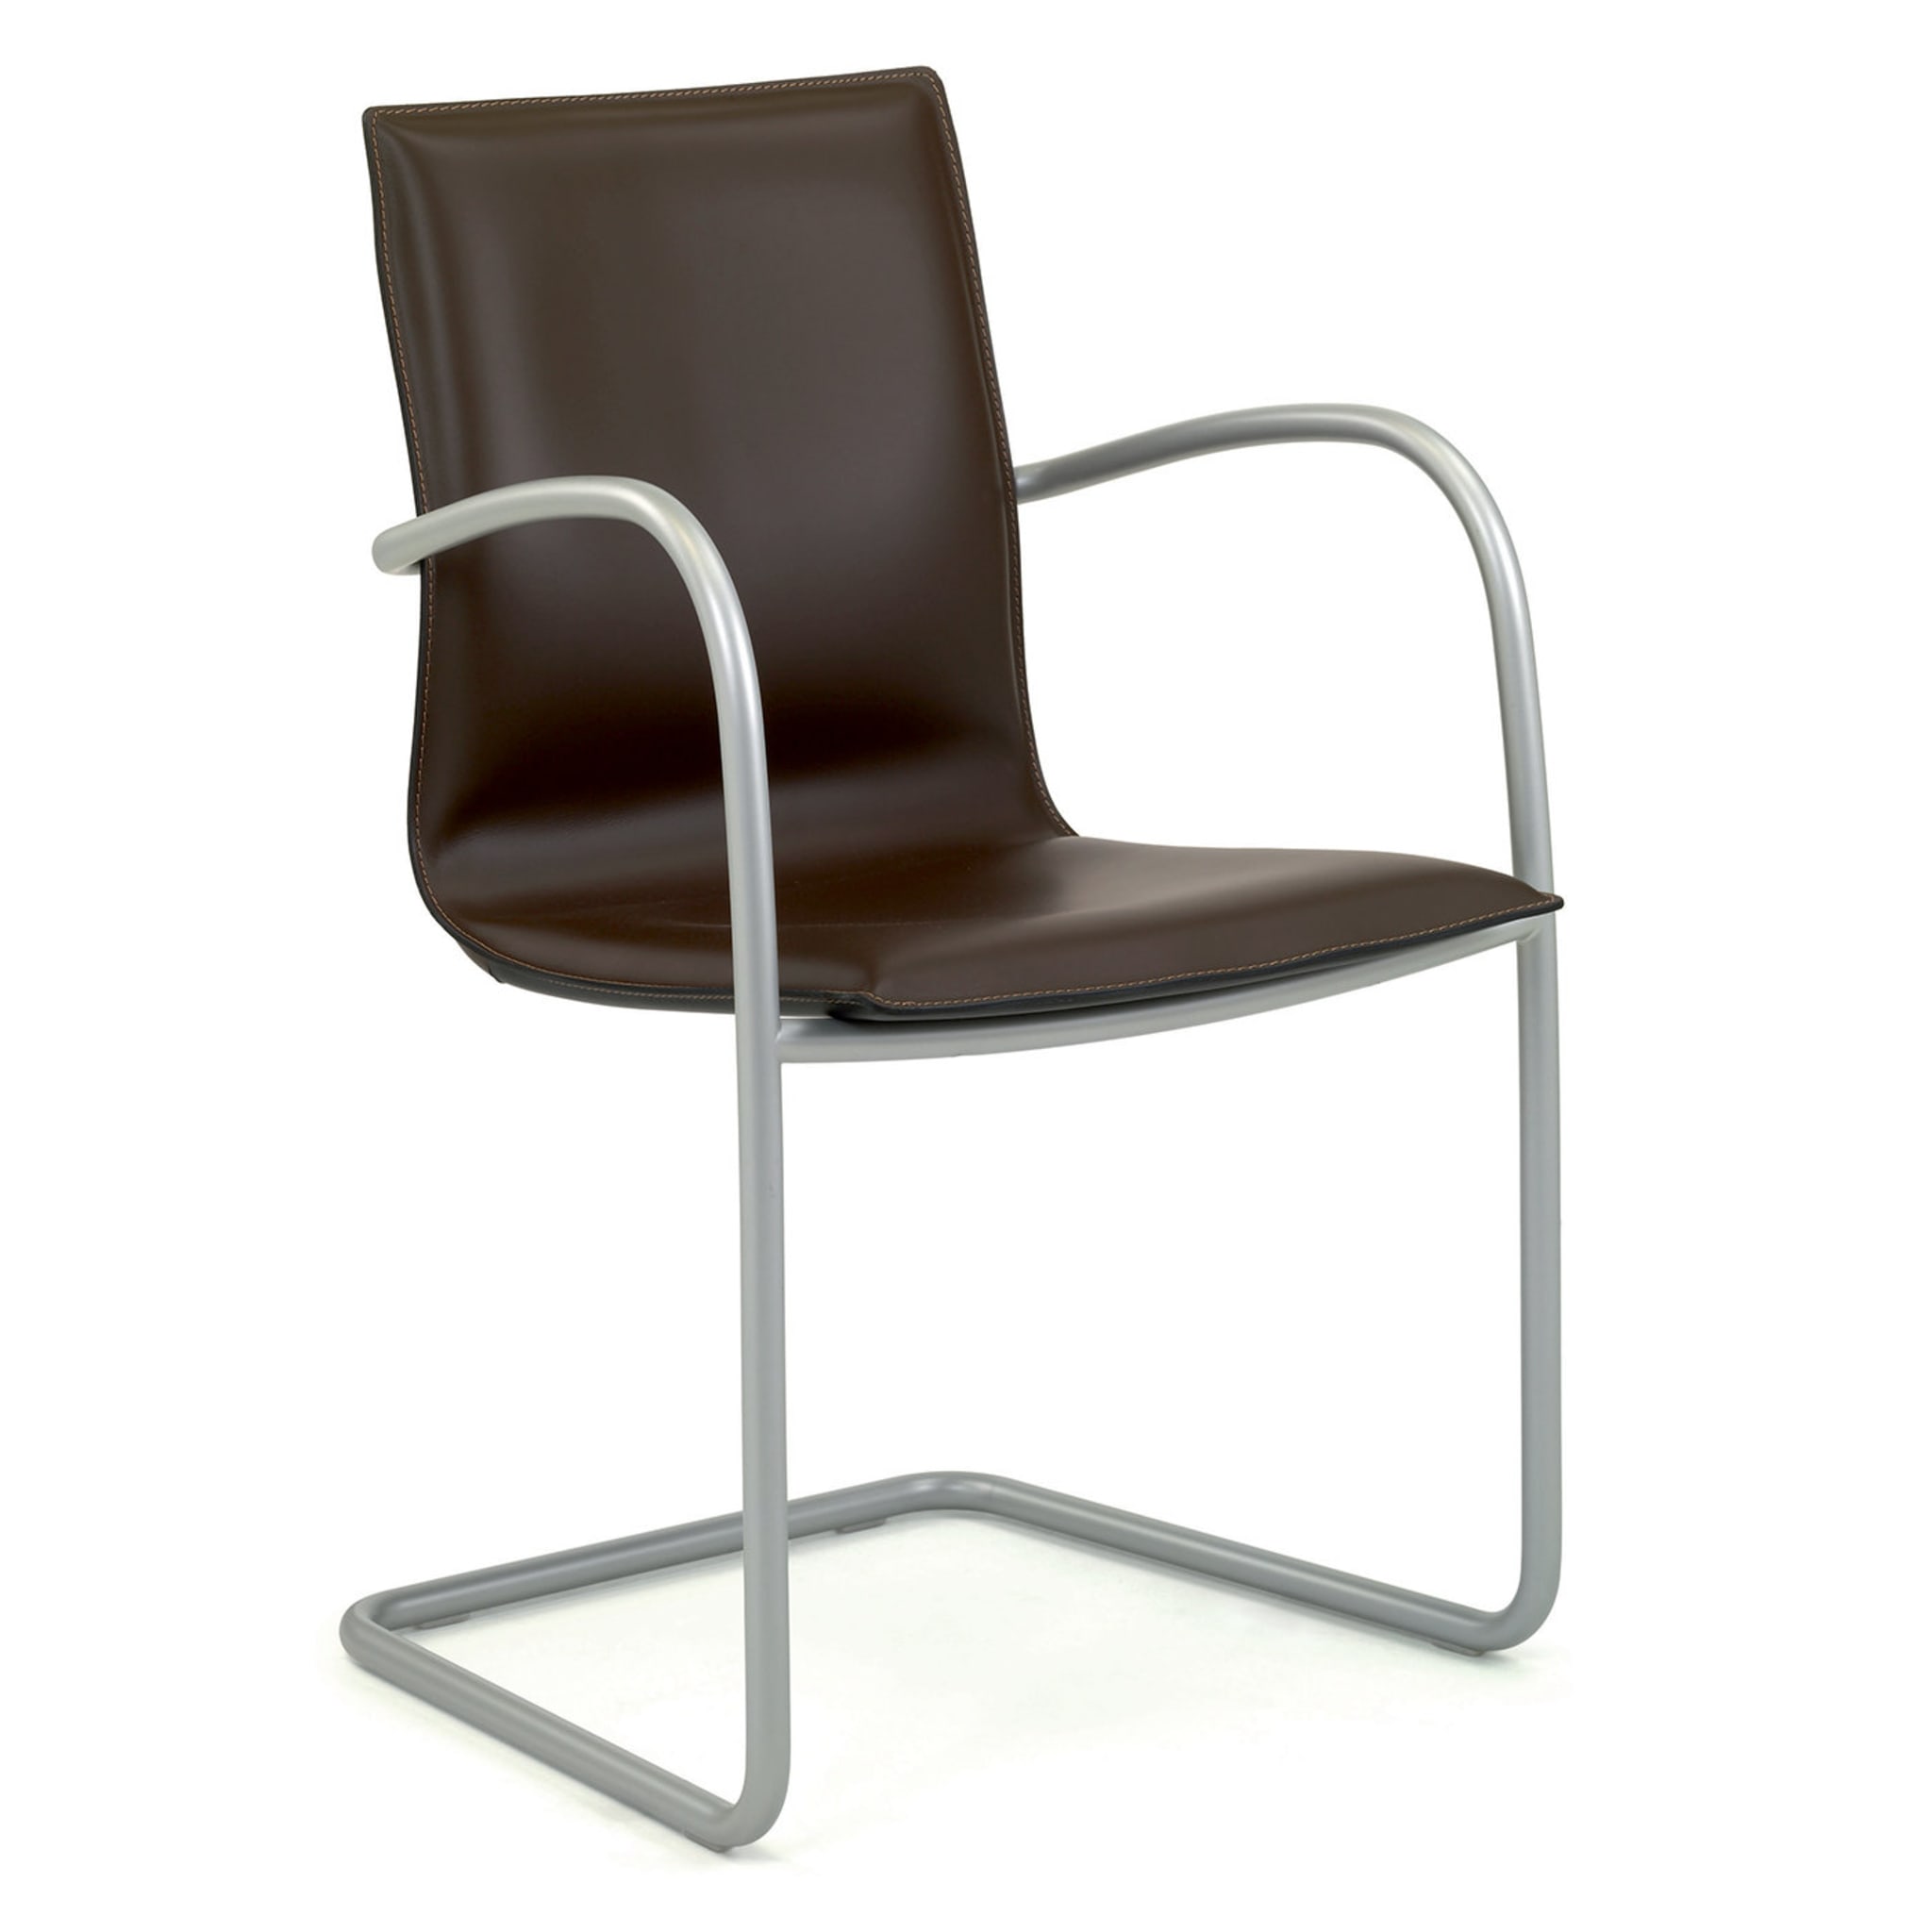 Micad Comfort Sessel von Michele Cadore - Alternative Ansicht 2